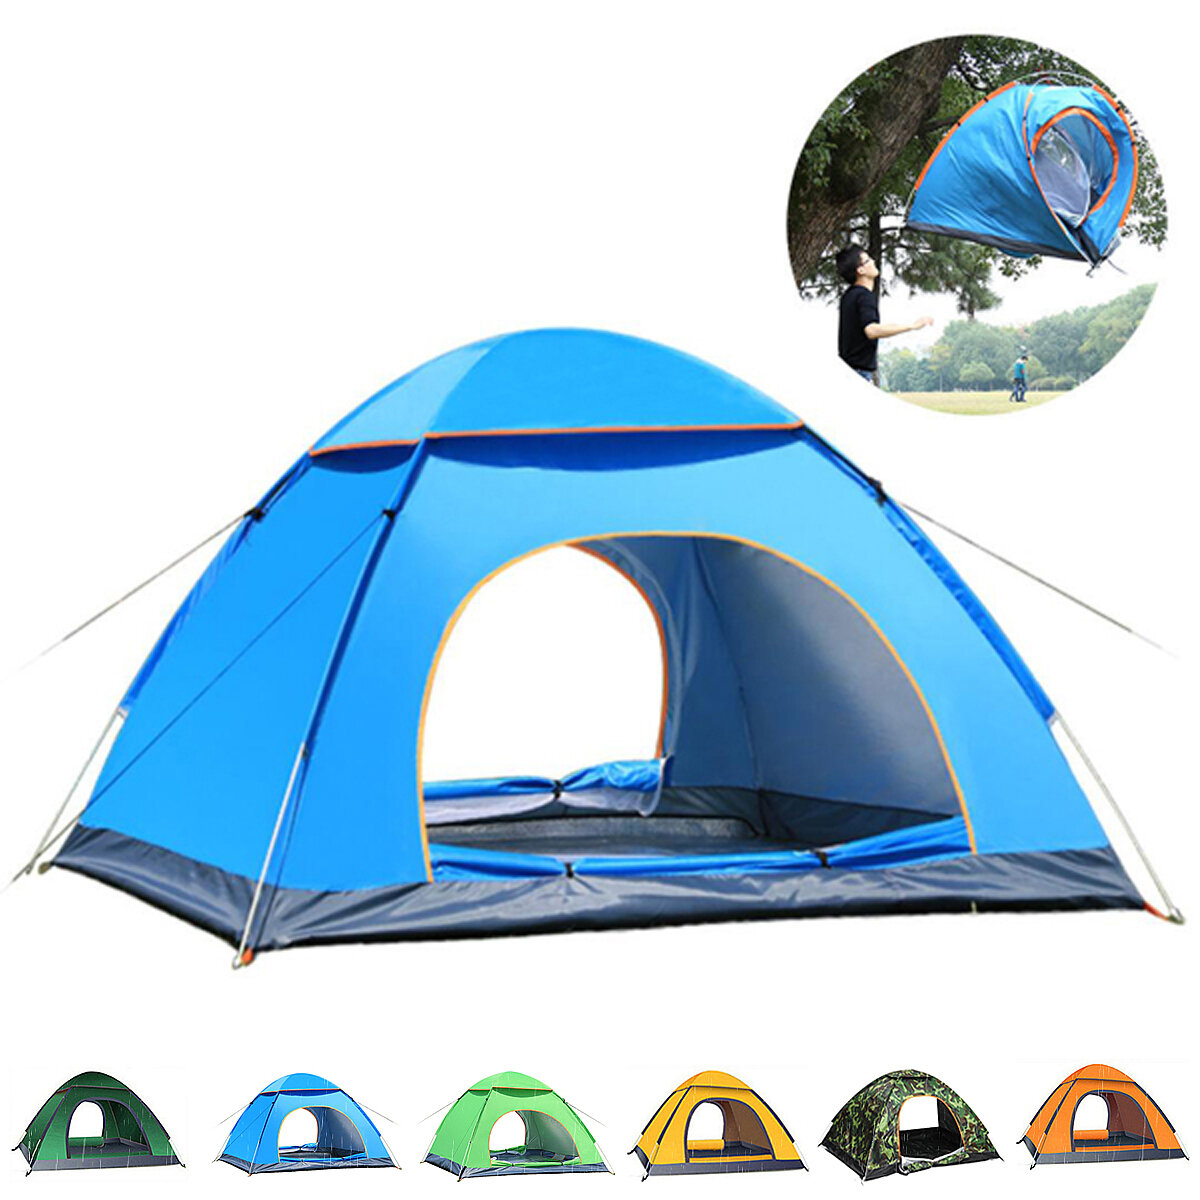 Палатка naturehike автоматическая, на 3 человека, синяя. Навес для кемпинга. Палатка стекловолокно автоматическая. Кемпинговая палатка премиум класса. Camping tent 2